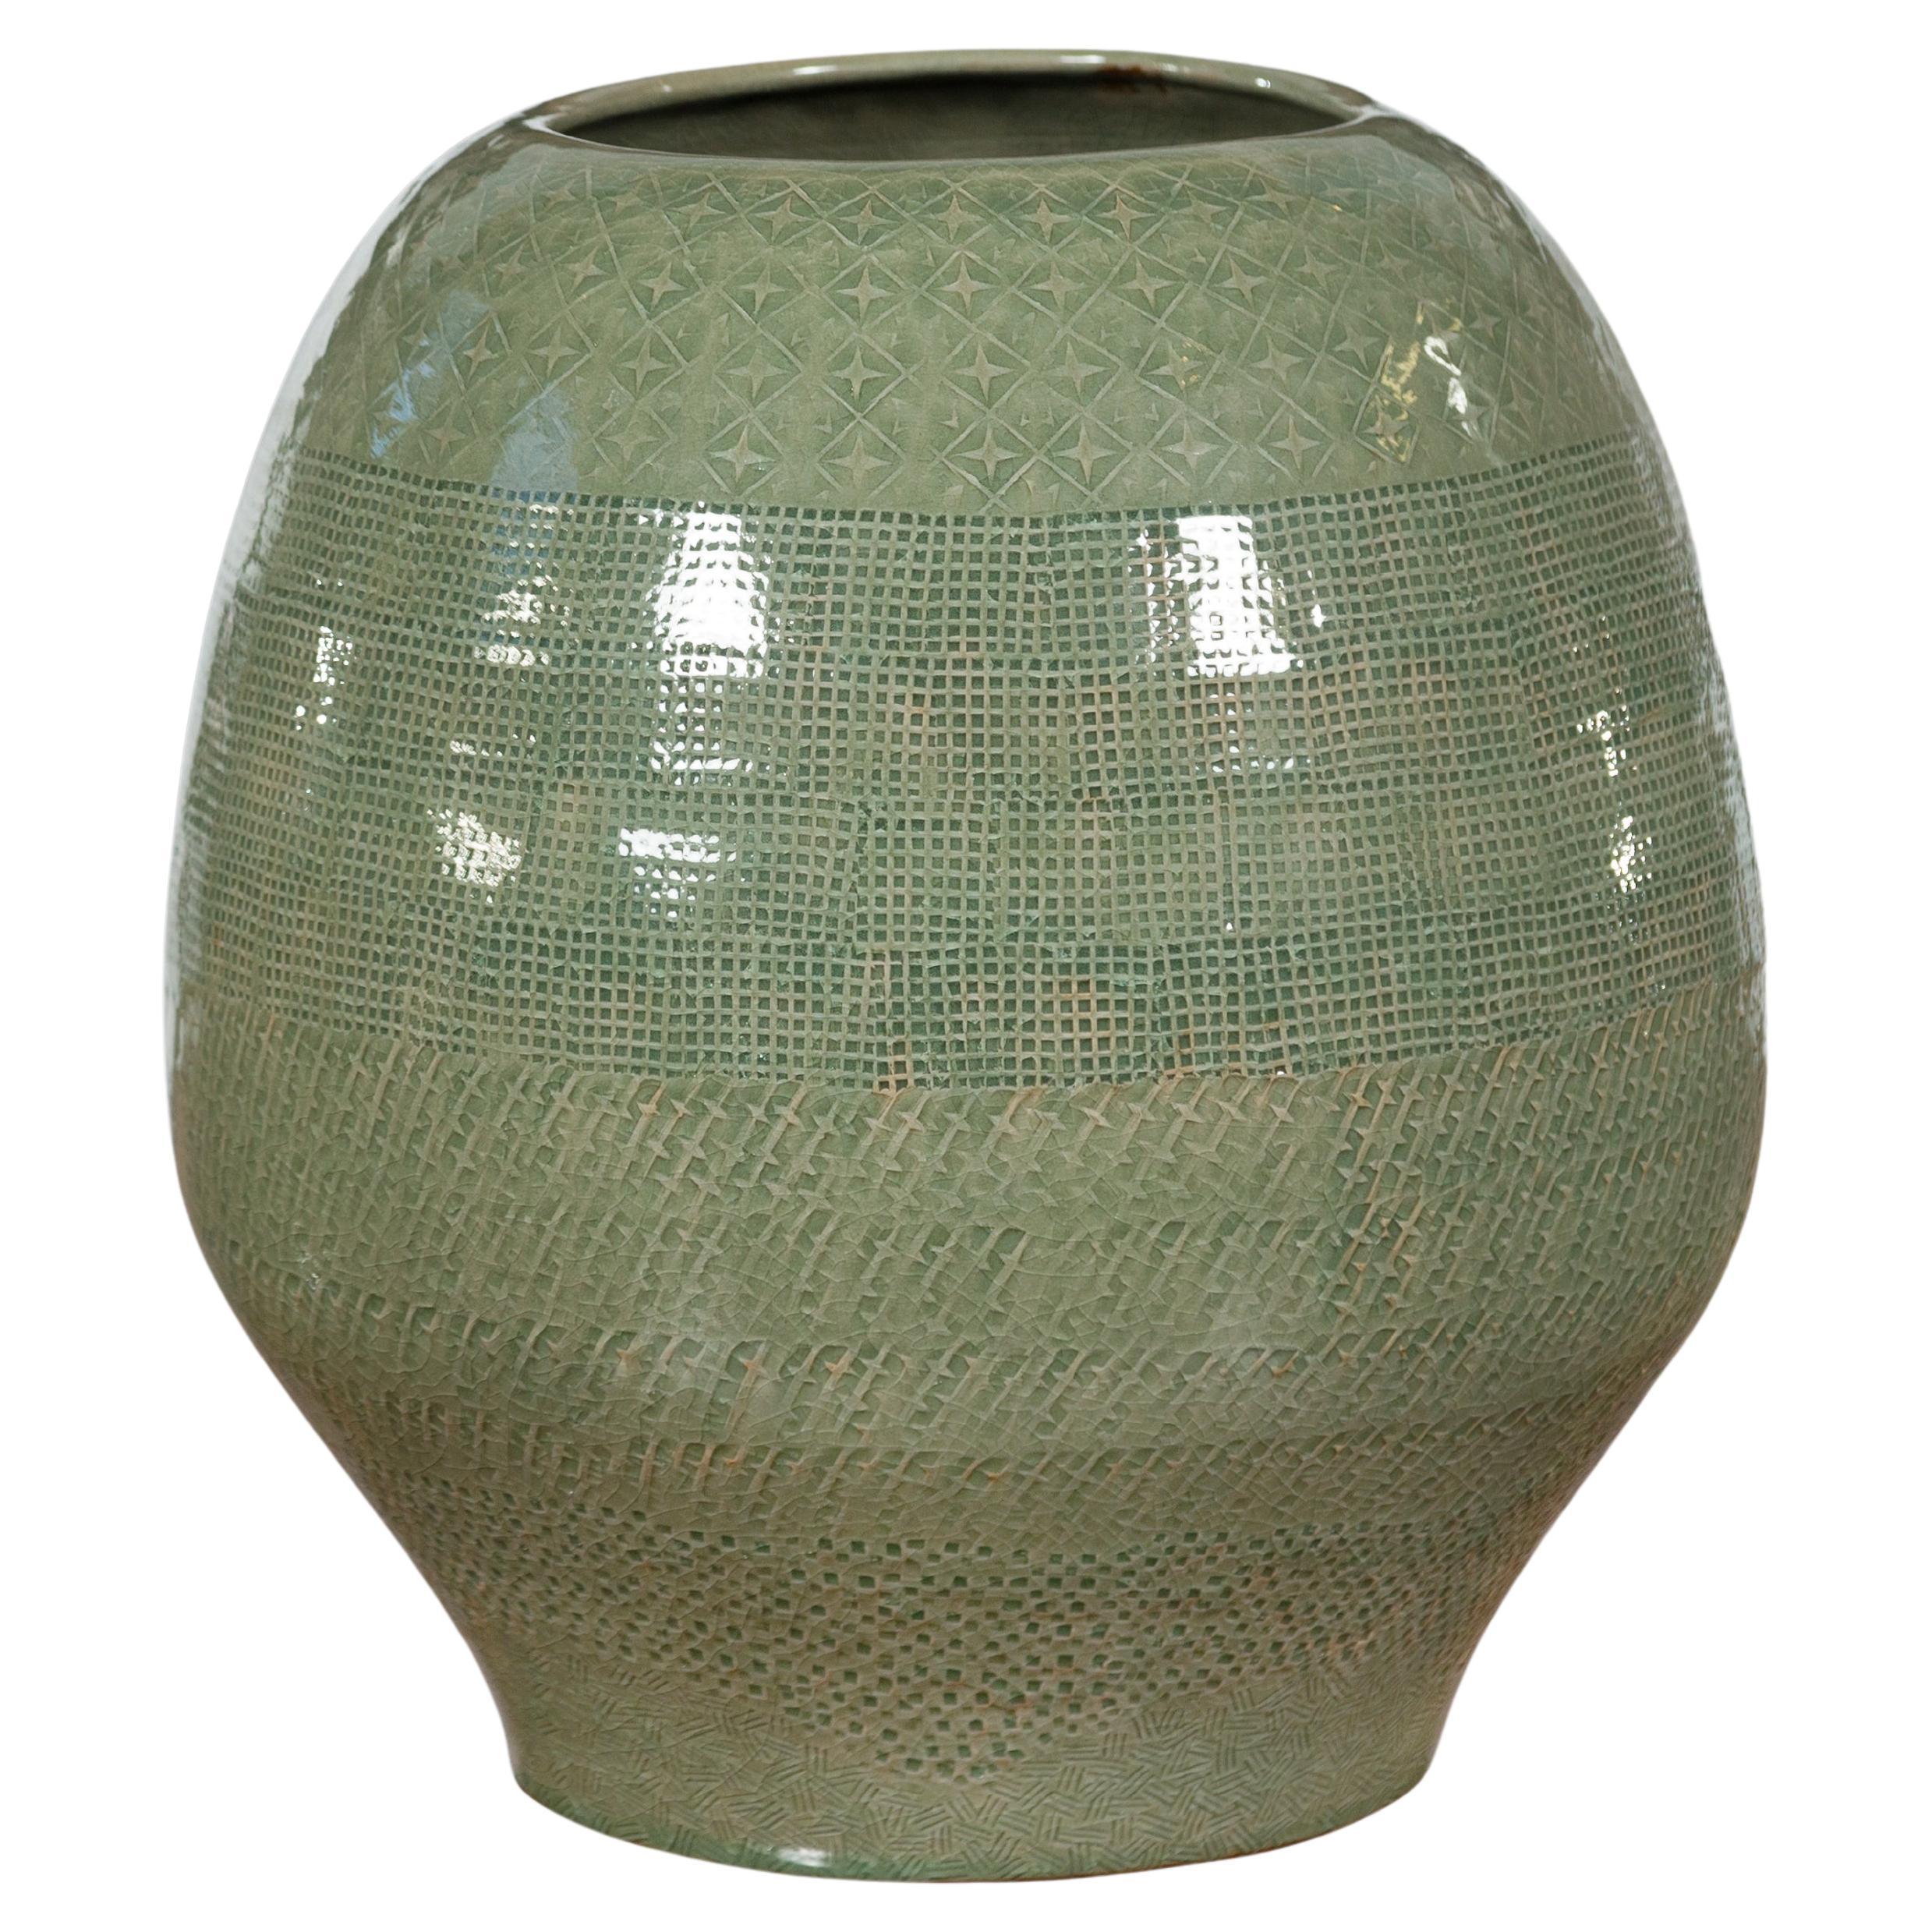 Vase artisanal en céramique émaillée verte Prem Collection avec décor géométrique